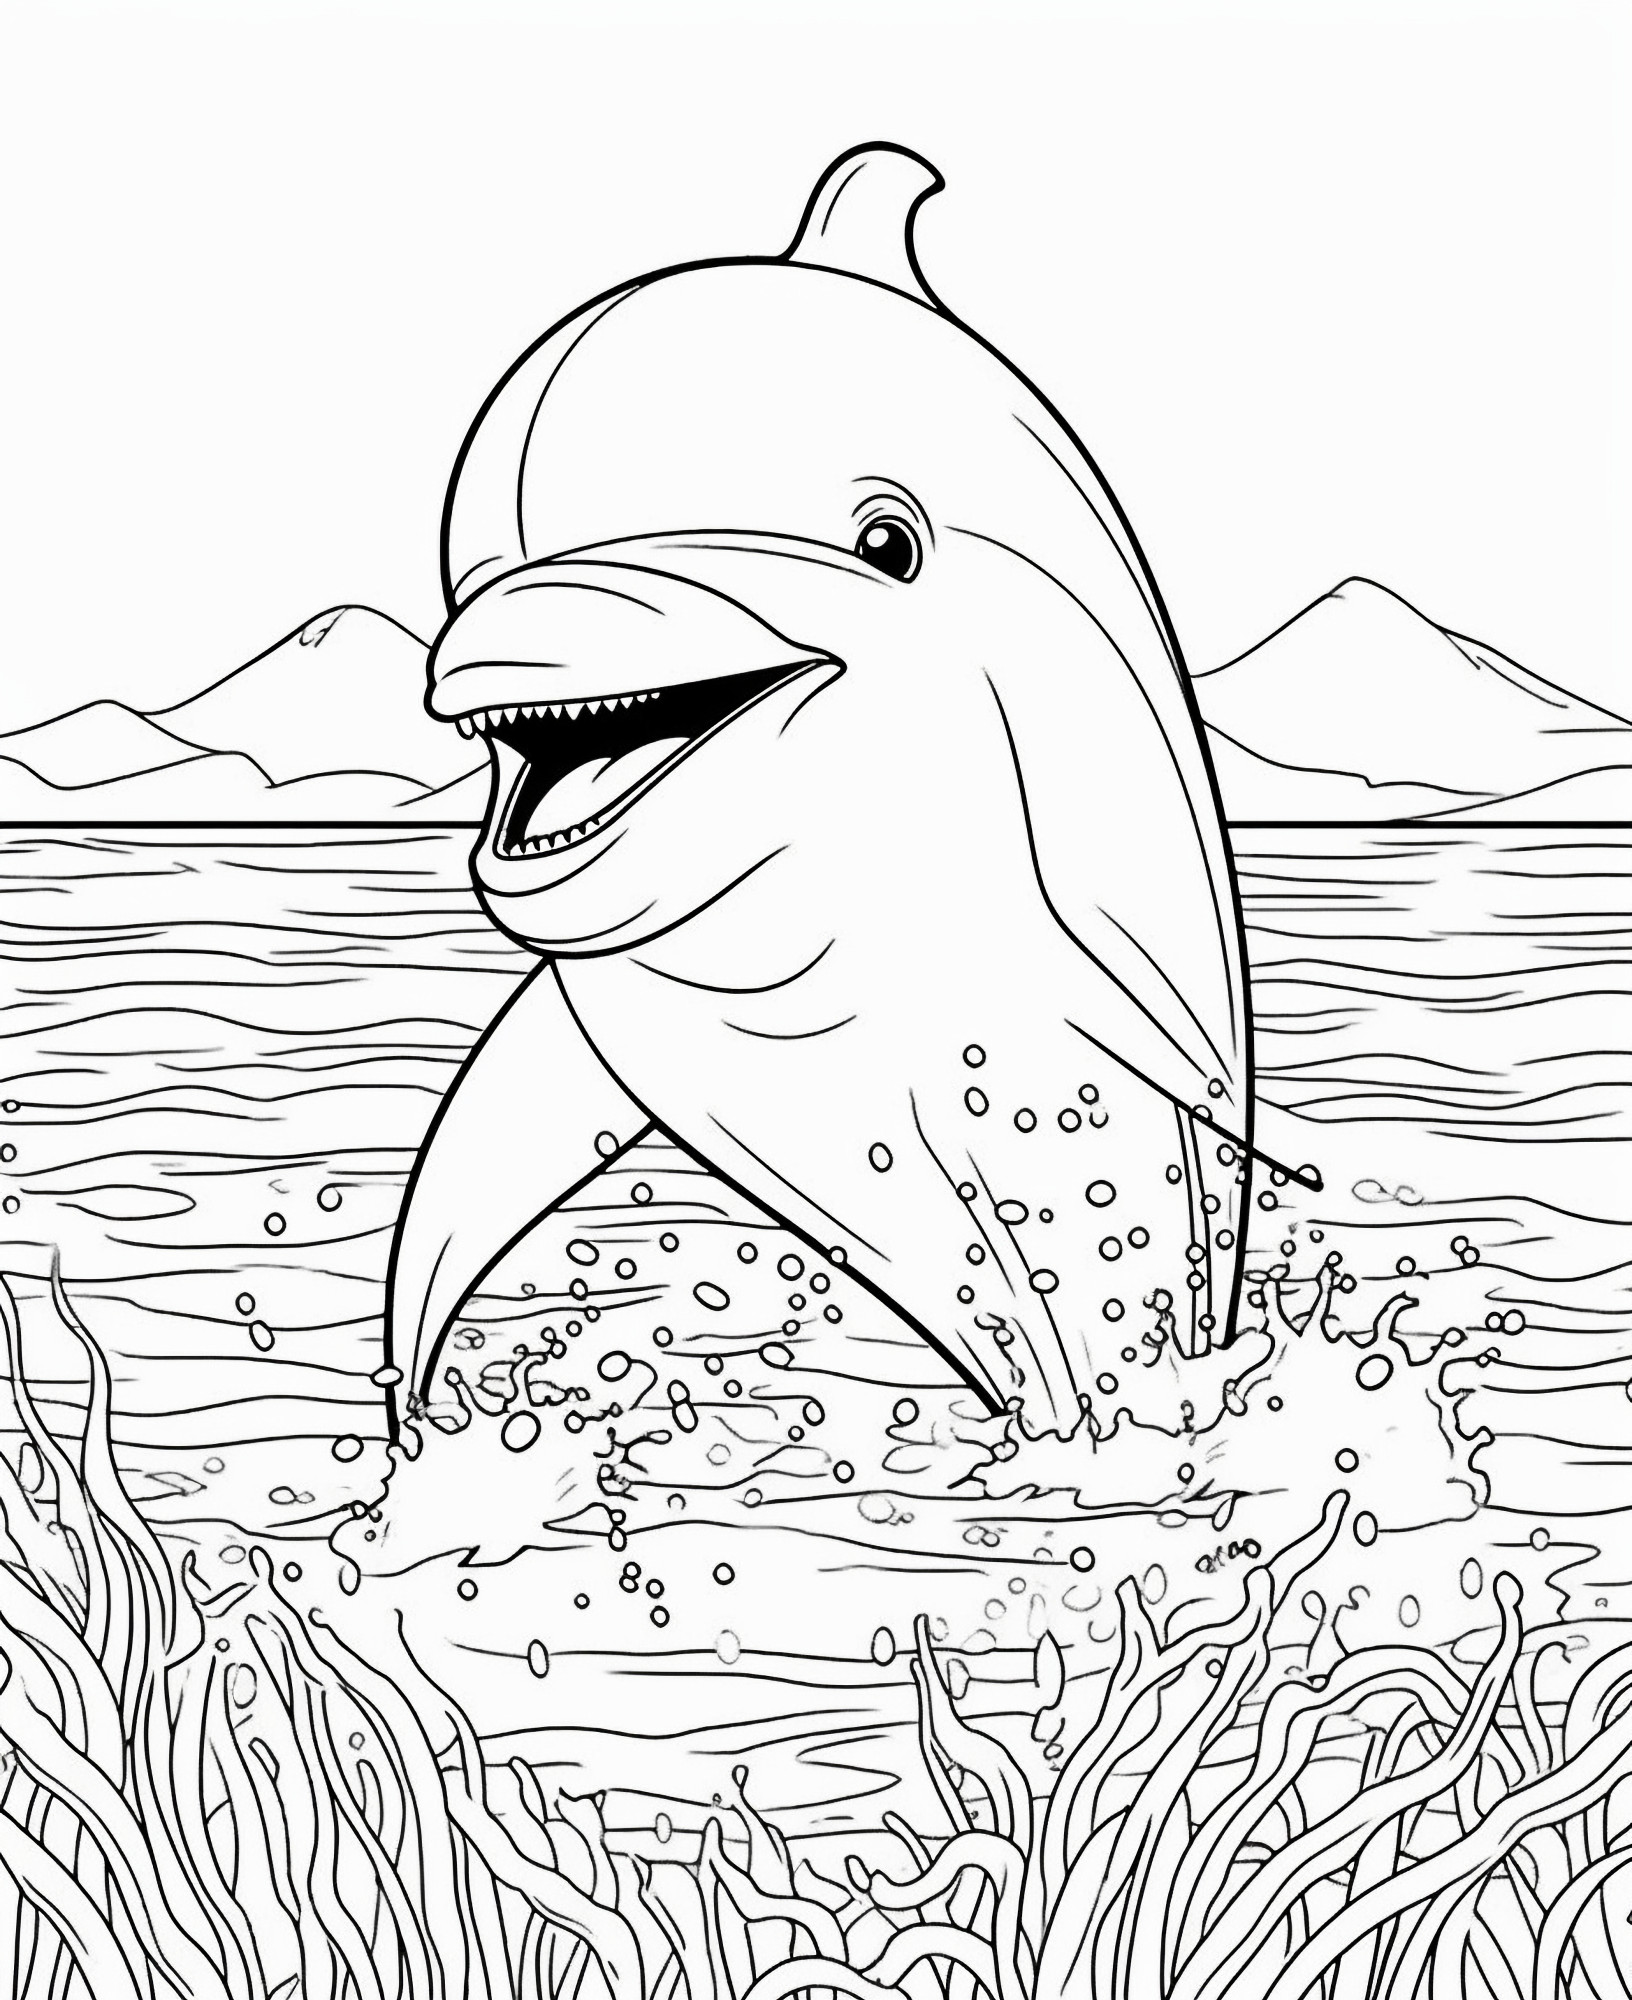 Раскраска для детей: дельфин вынырнул из воды на фоне гор